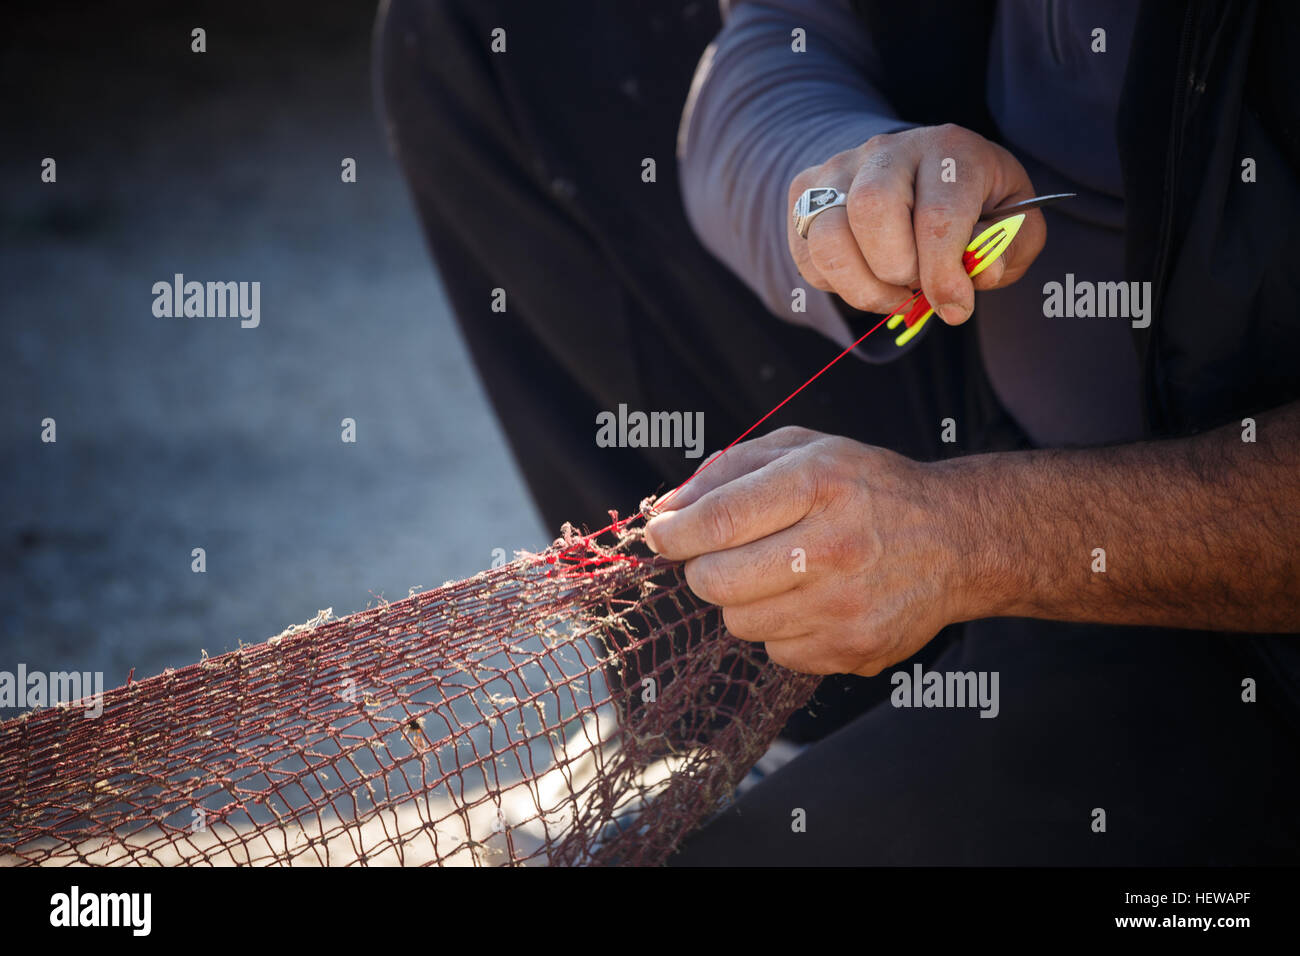 https://c8.alamy.com/comp/HEWAPF/fisherman-repars-the-fishing-nets-HEWAPF.jpg